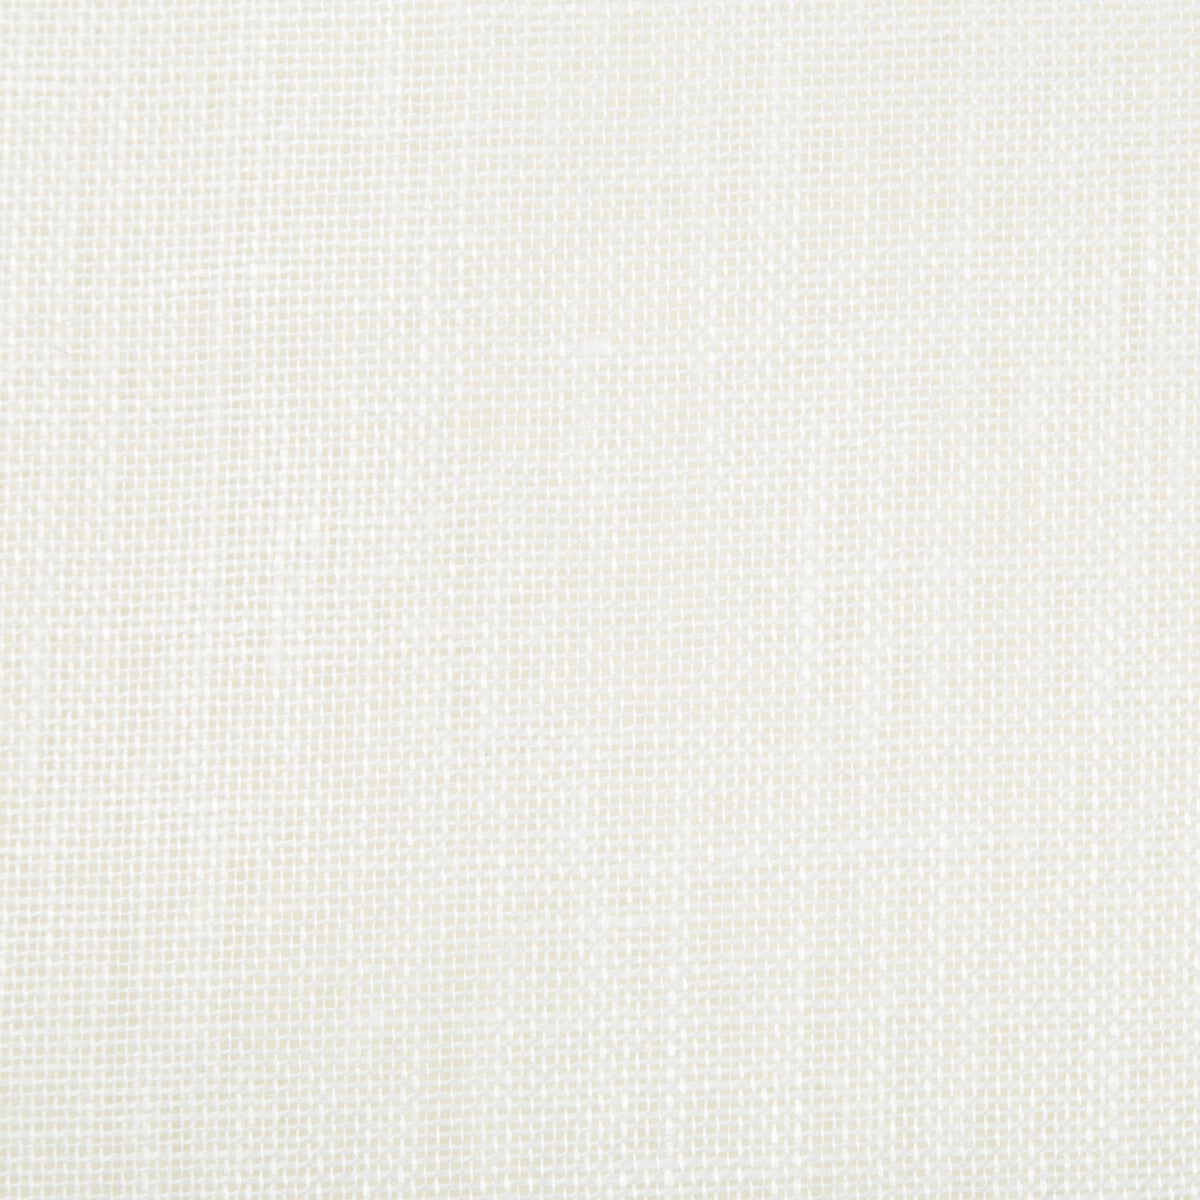 Kravet Basics fabric in 9935-101 color - pattern 9935.101.0 - by Kravet Basics